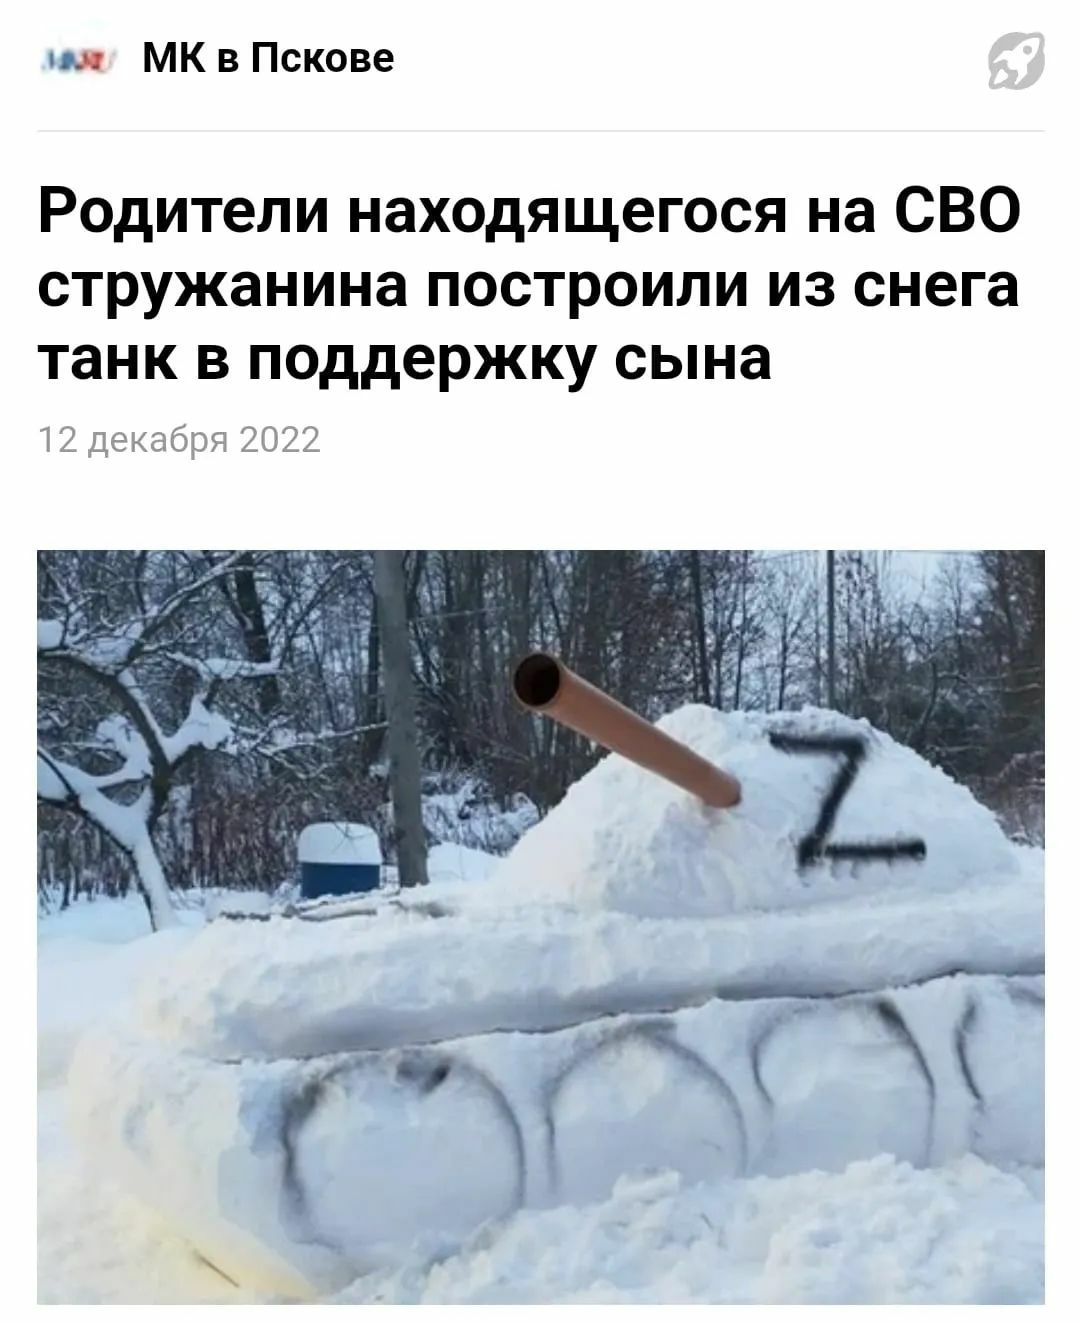 МК в Пскове Родители находящегося на СВО стружанина построили из снега танк в поддержку сына